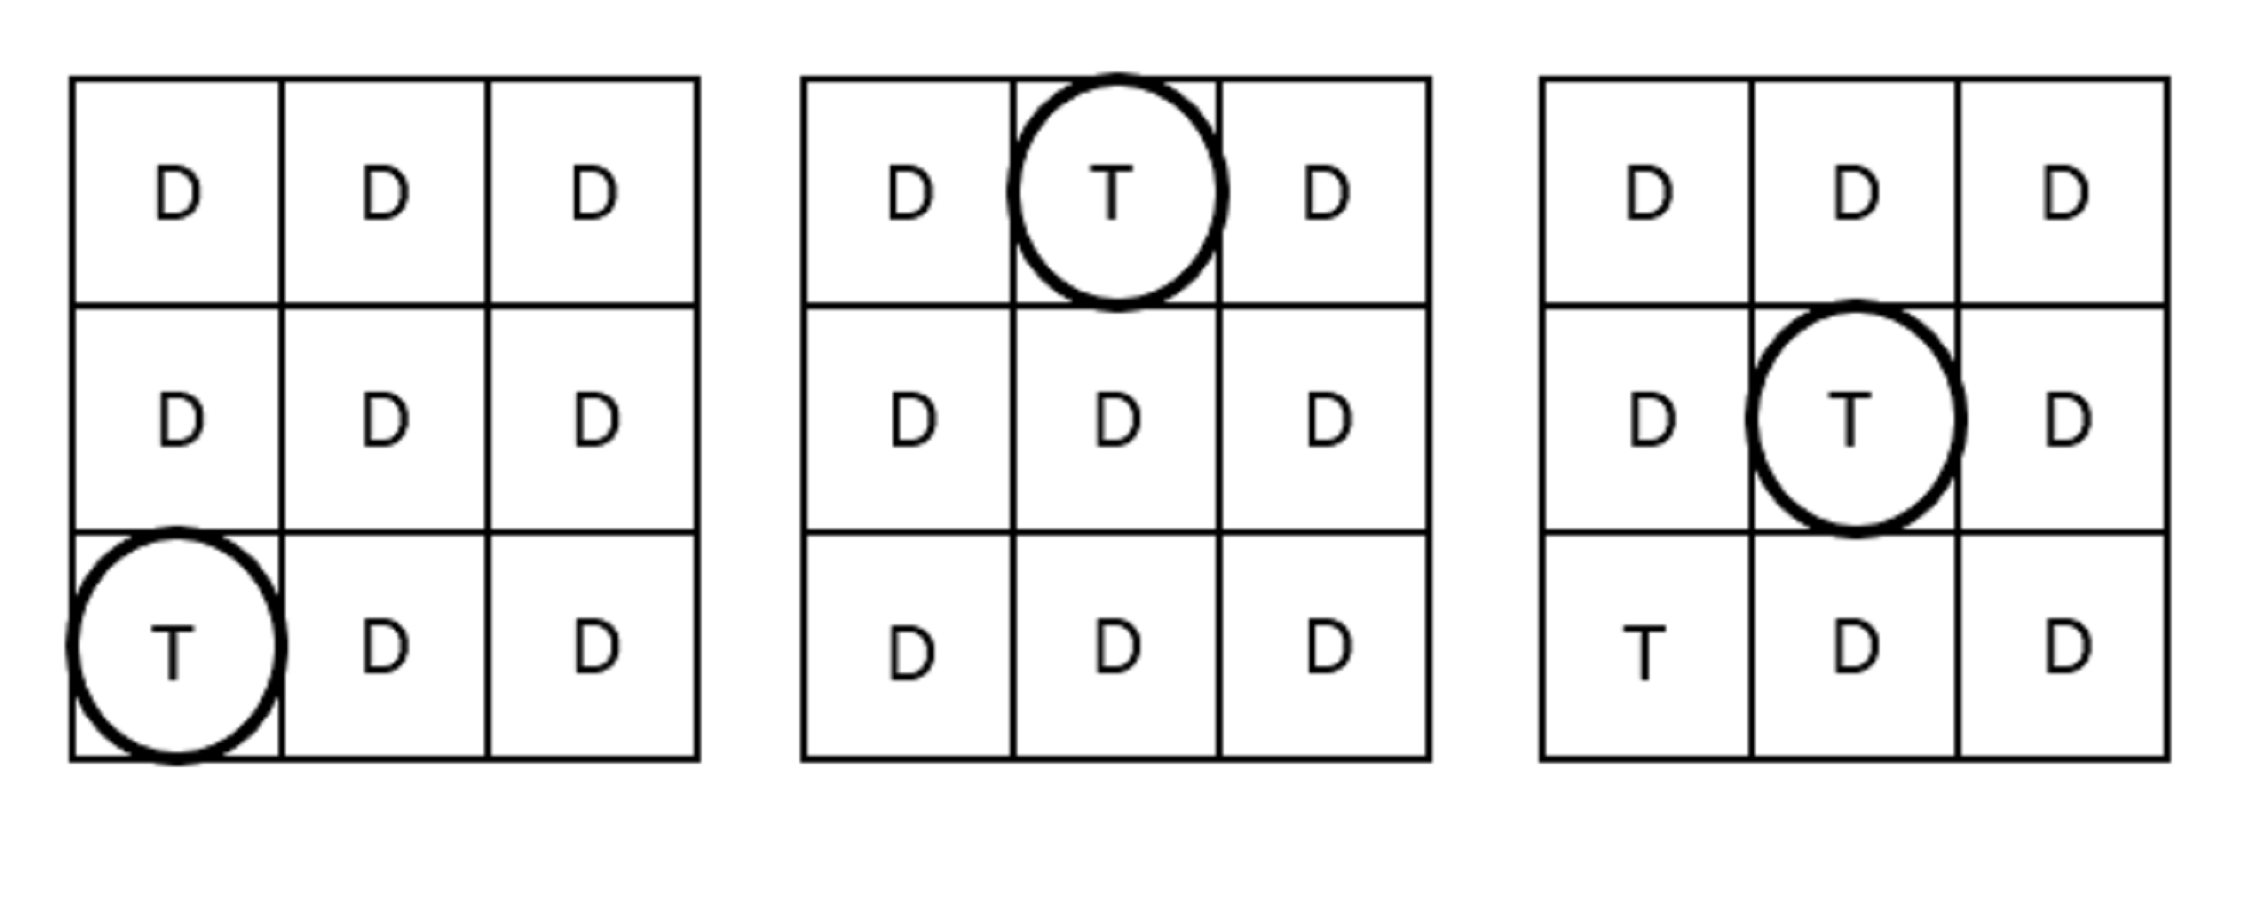 scheme example 